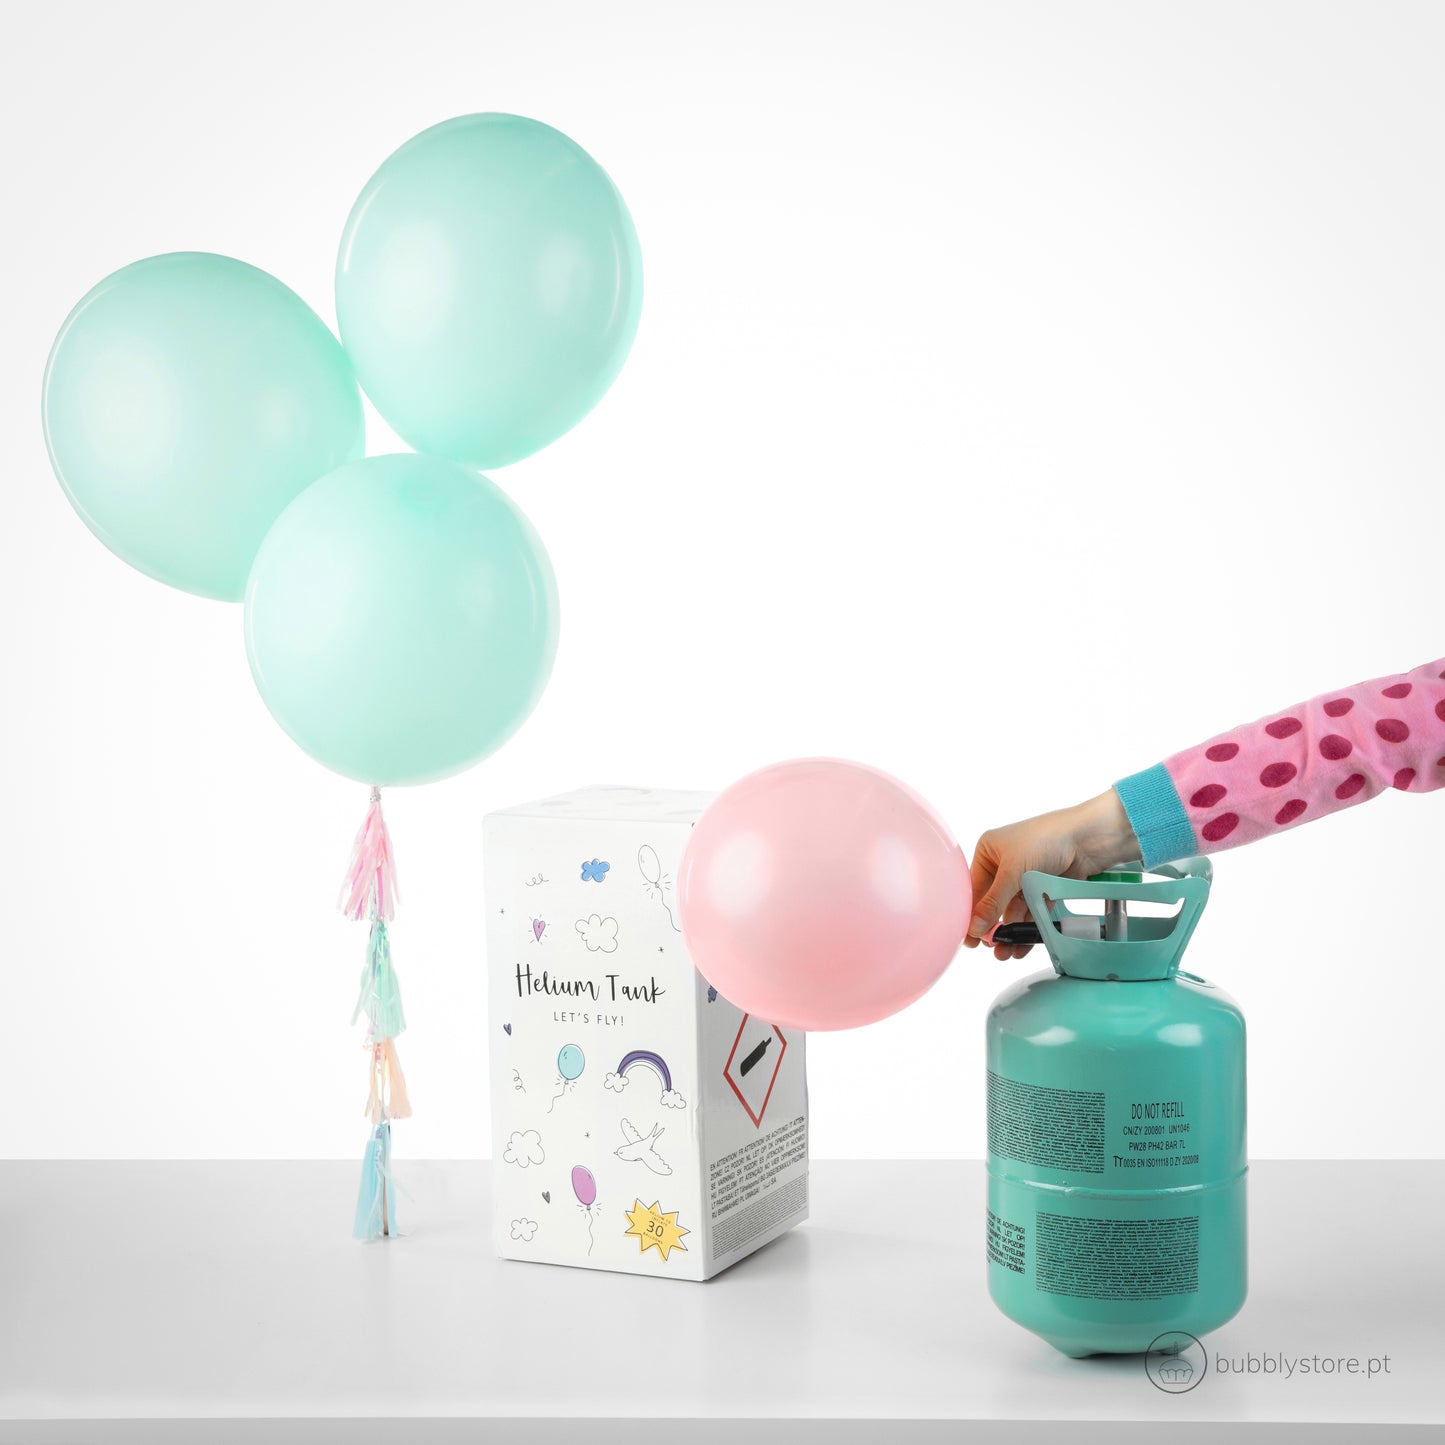 Helium Bottle for 30 Balloons